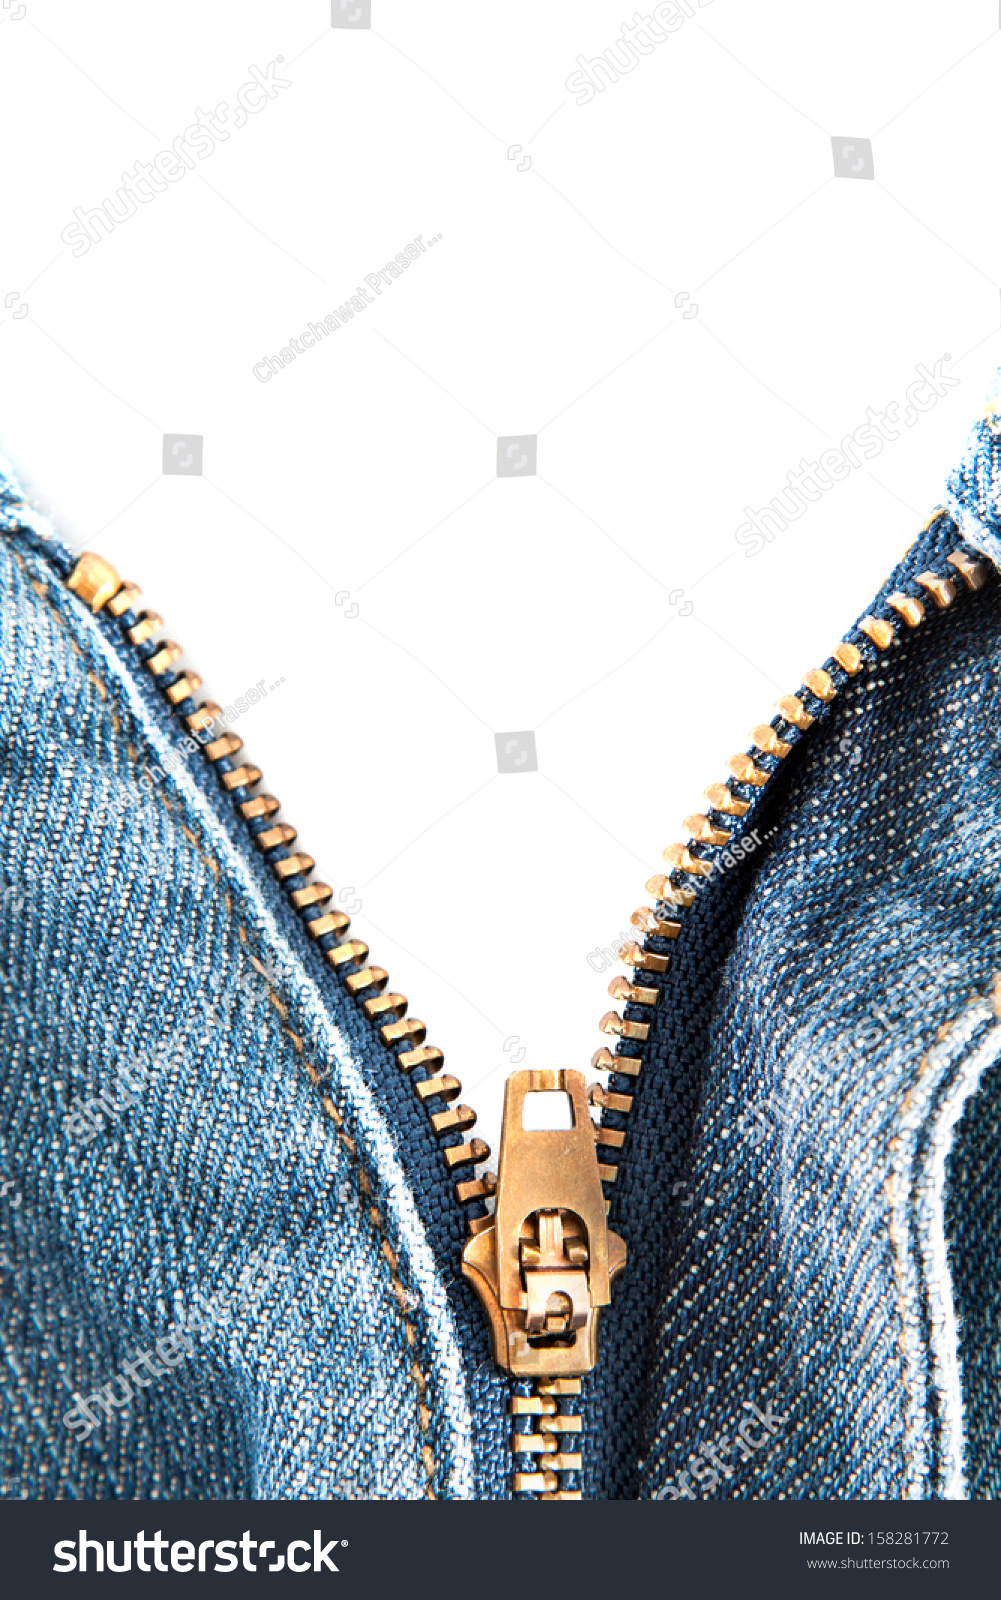 Blue Jeans Open Zipper Stock Photo 158281772 - Shutterstock